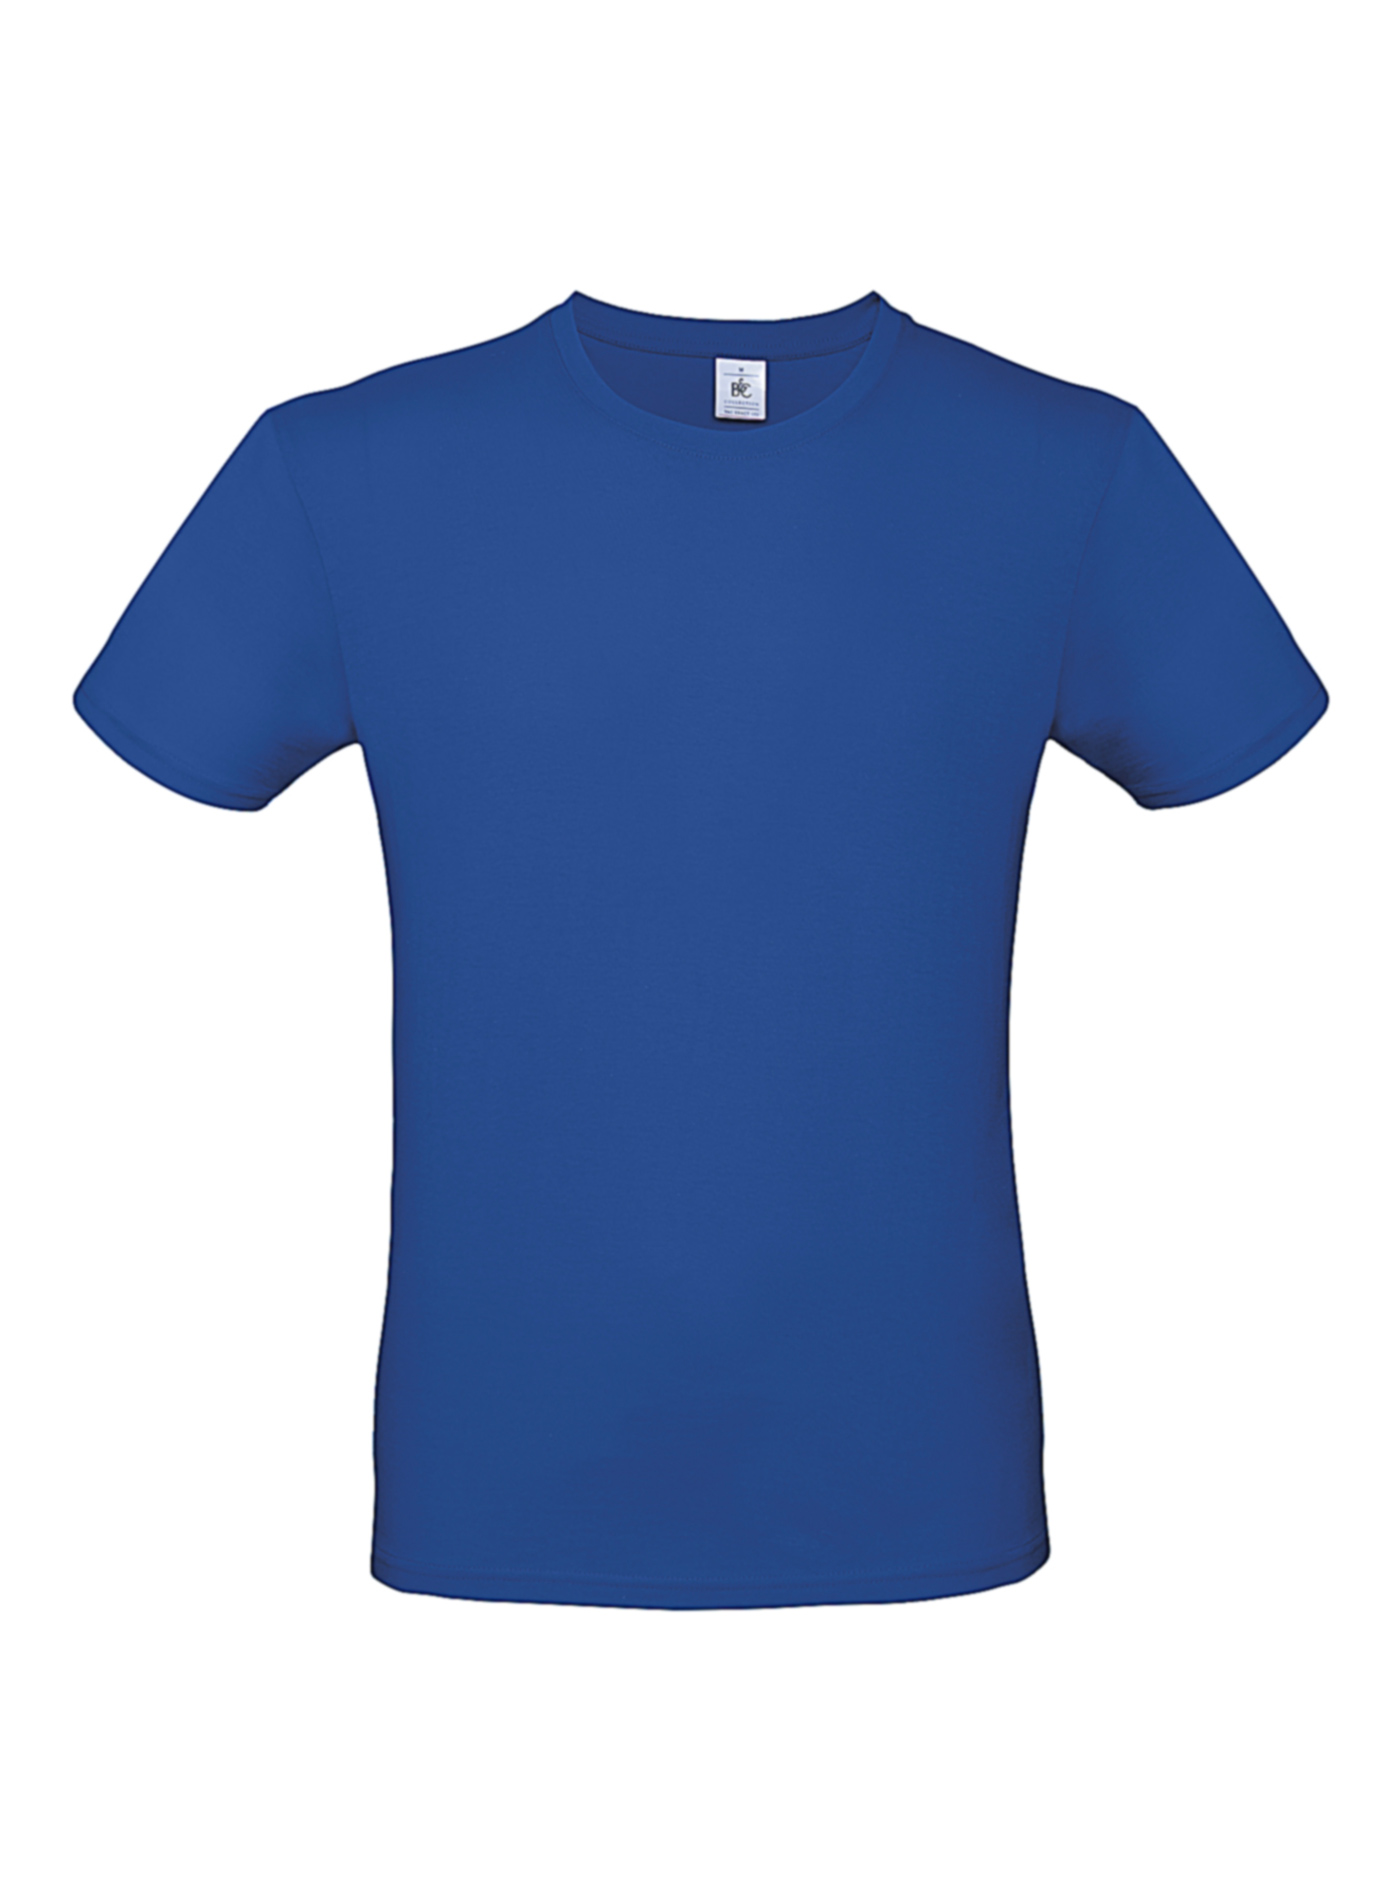 Pánské tričko B&C - královská modrá 5XL